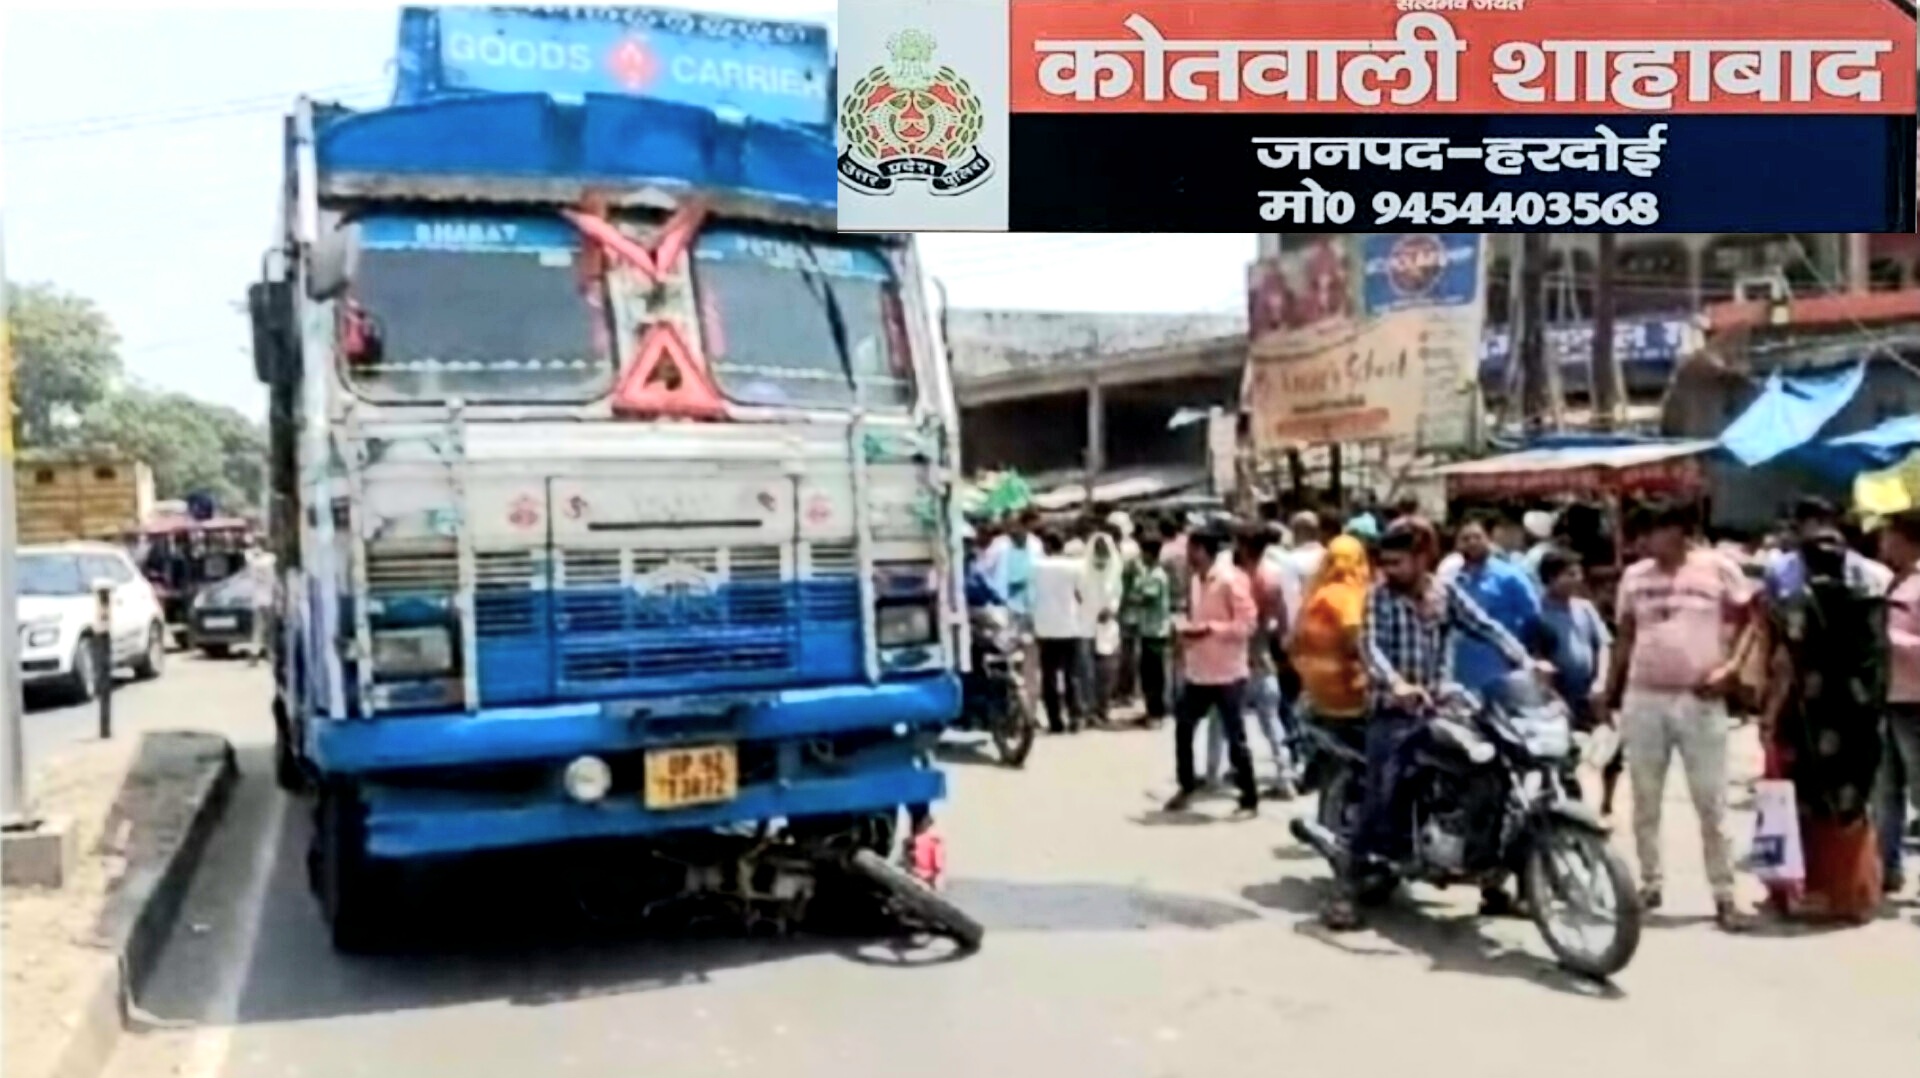 हरदोई में गैस सिलेंडर से भरे ट्रक से कुचलकर बाइक सवार दम्पति की मौत